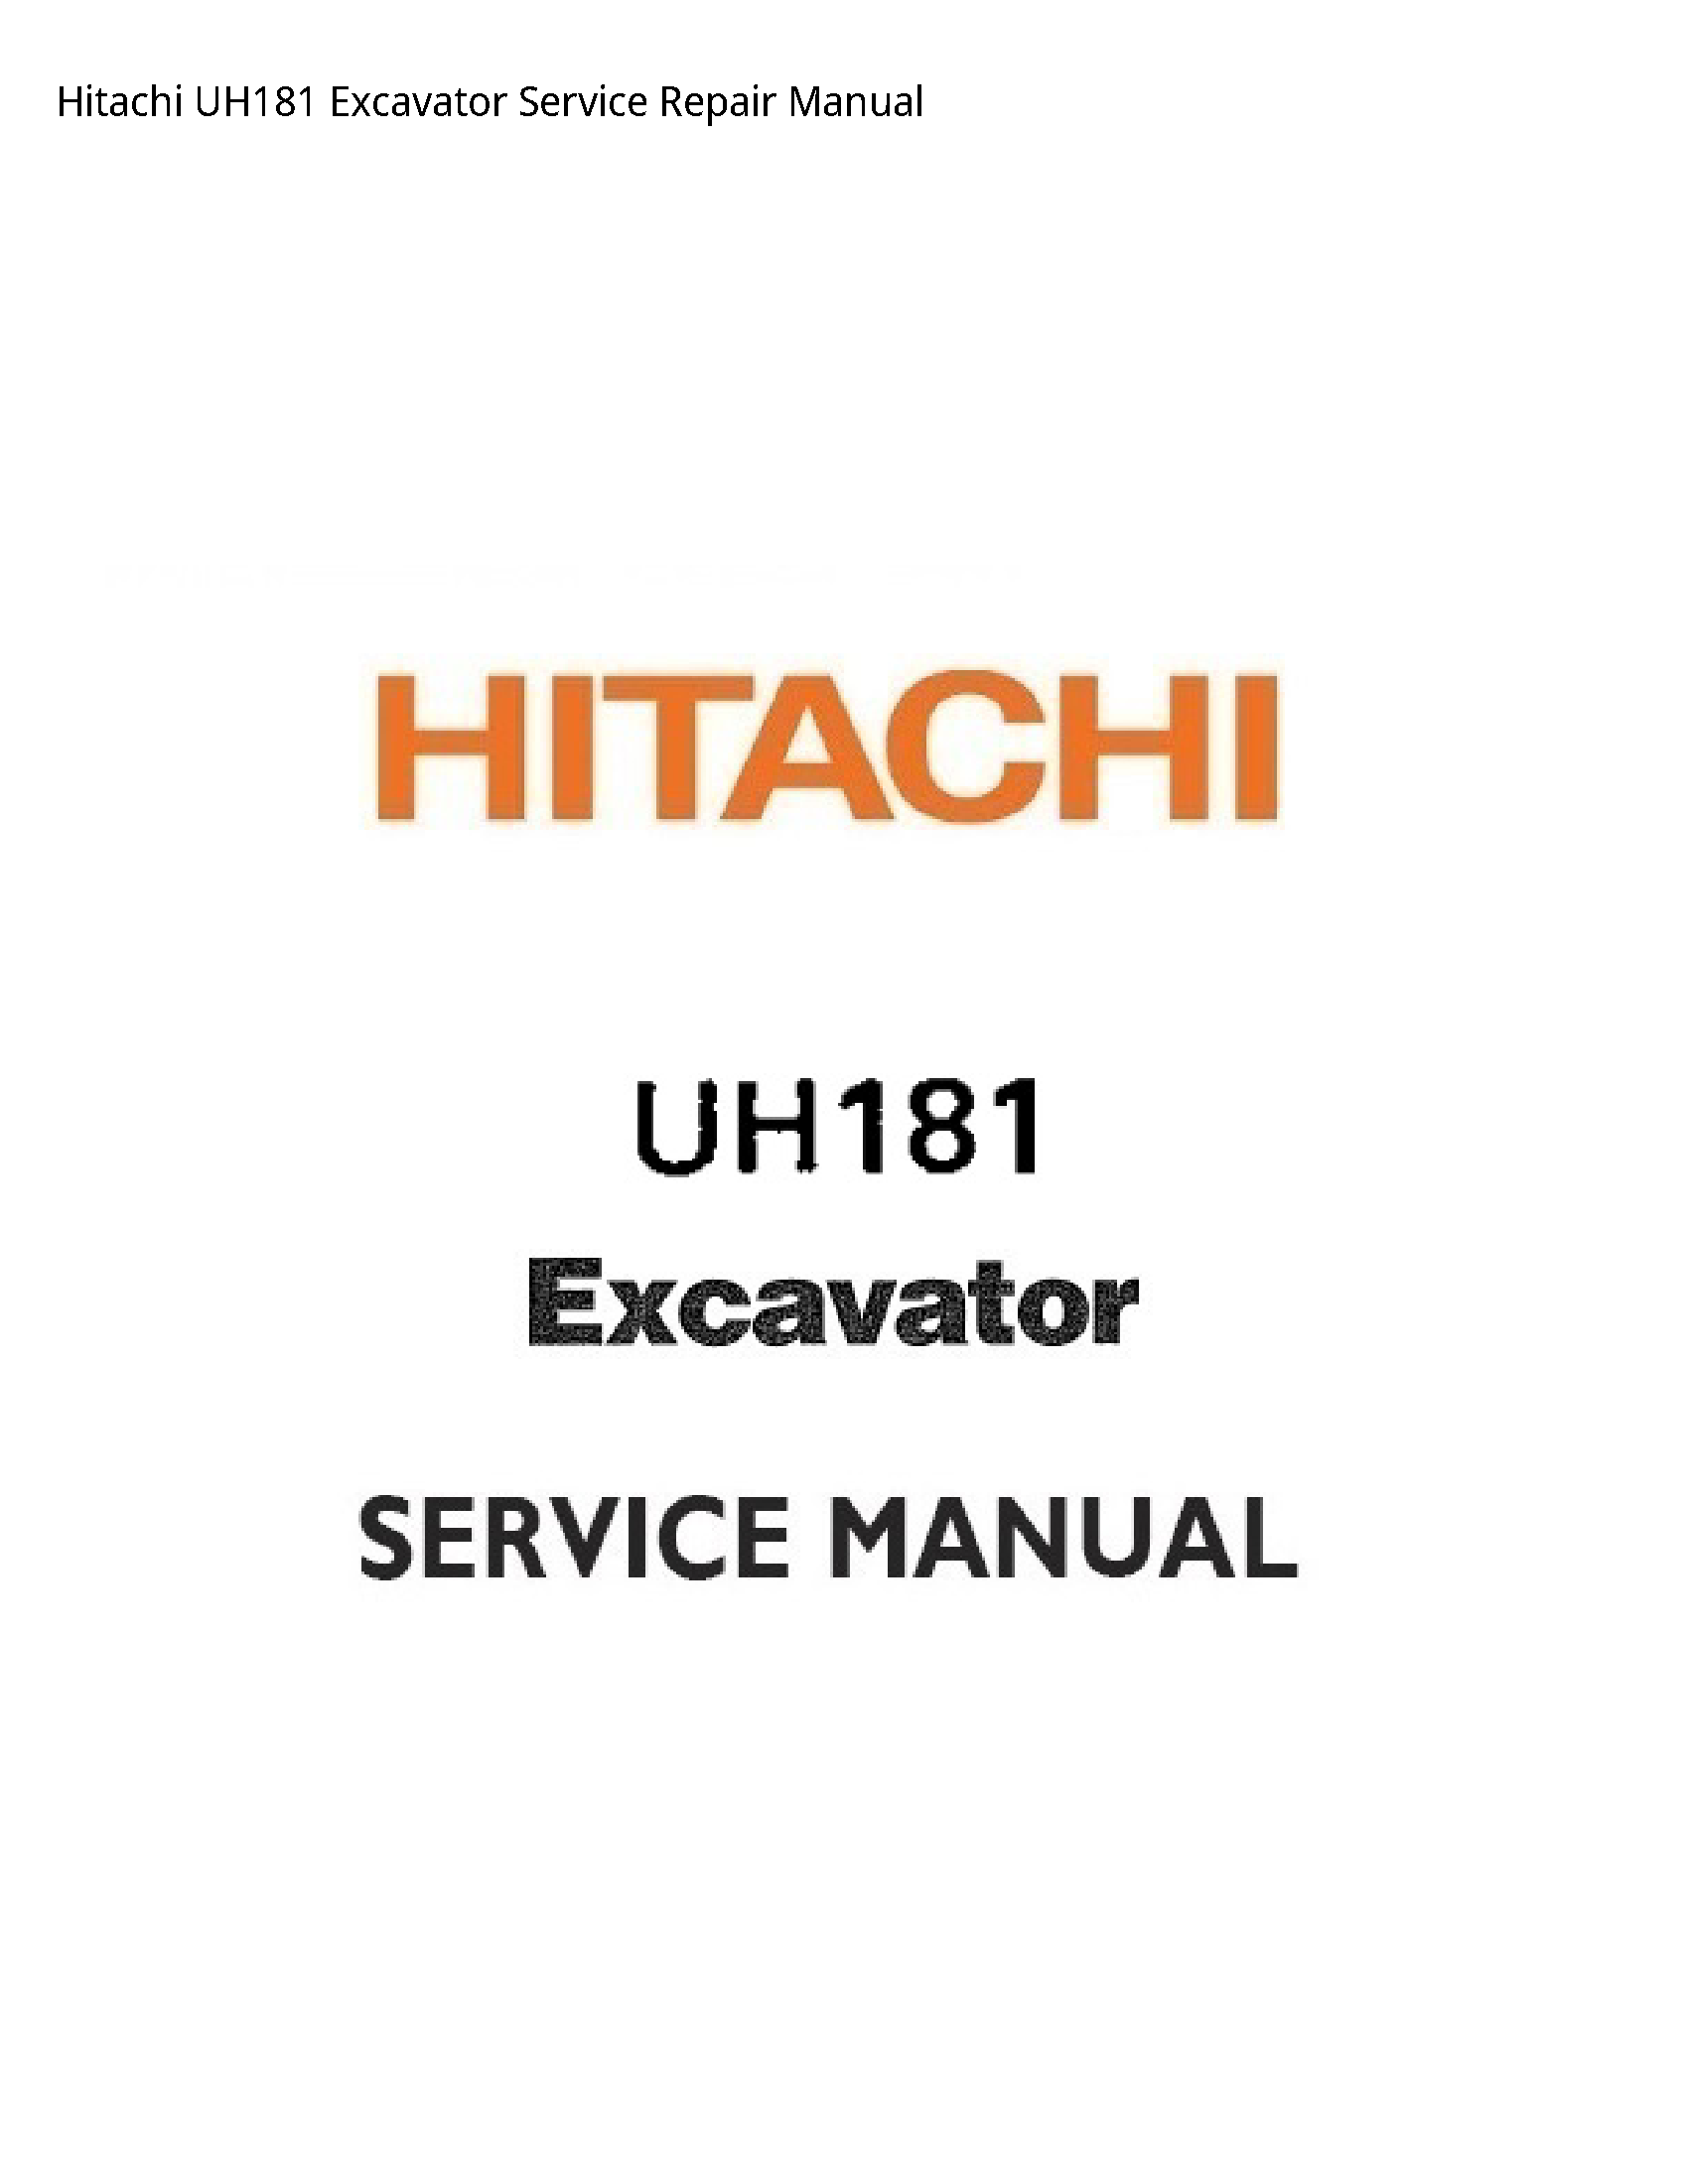 Hitachi UH181 Excavator manual